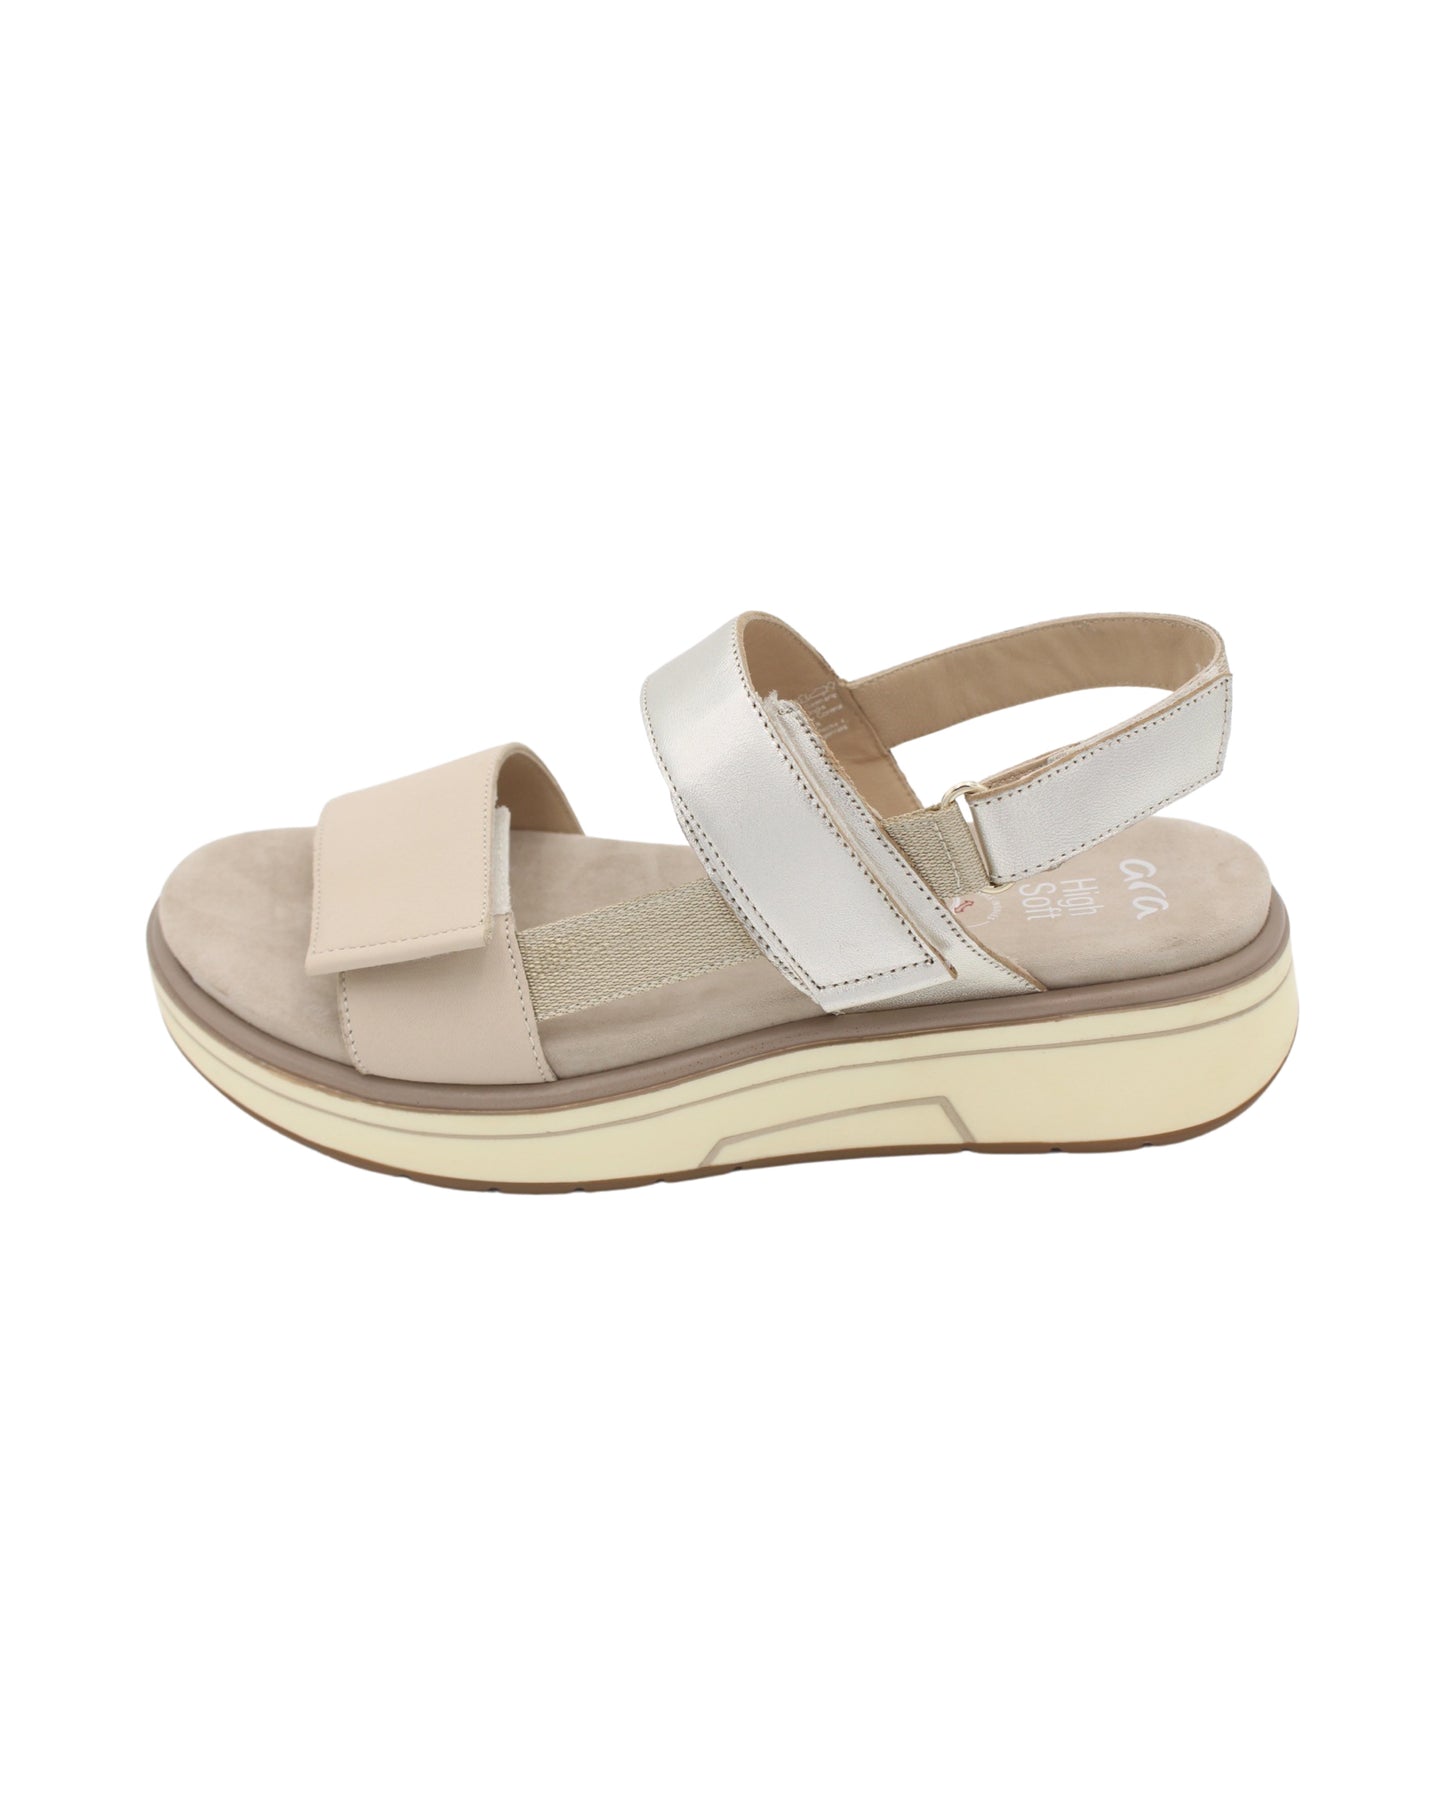 Ara - Ladies Shoes Sandals Beige, Platinum (2236)